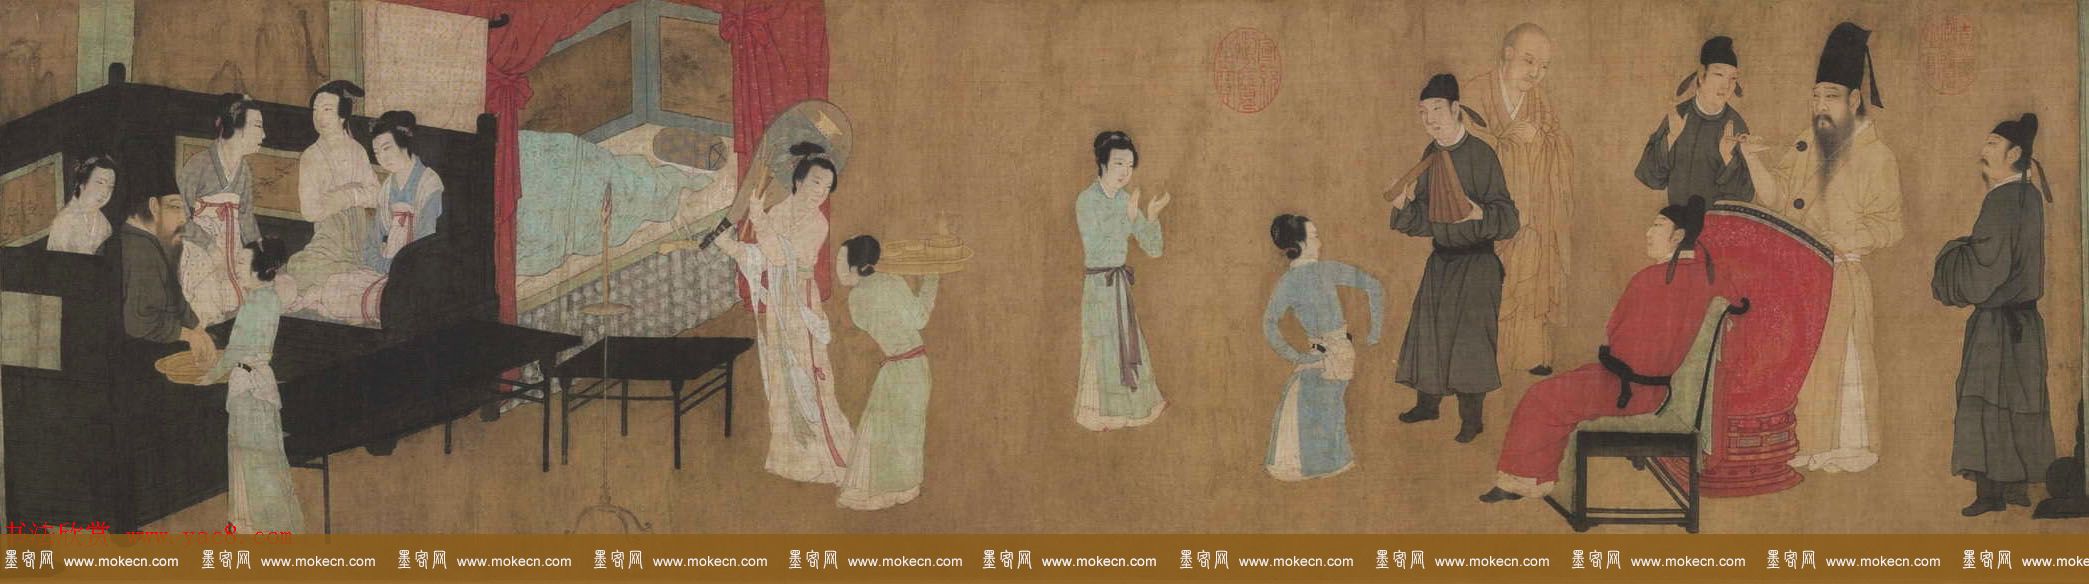 五代顾闳中人物画卷《韩熙载夜宴图》北京故宫博物院藏